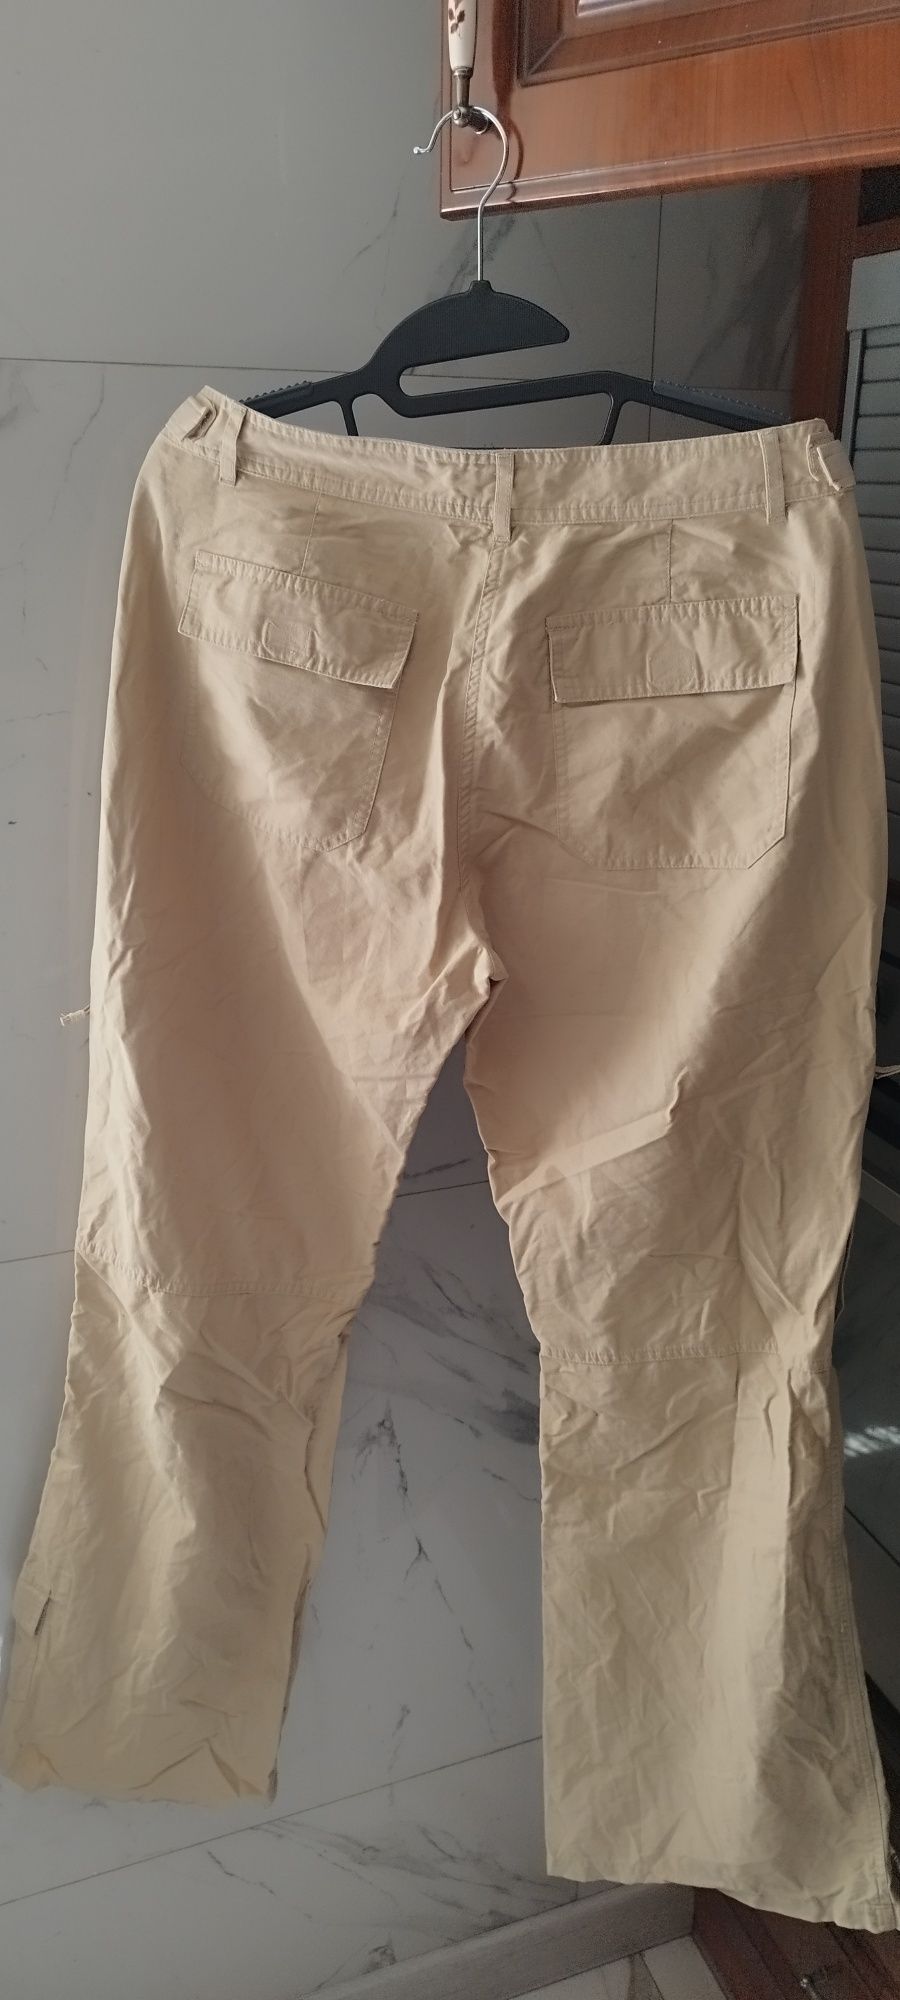 Spodnie letnie edc r40, piaskowe.